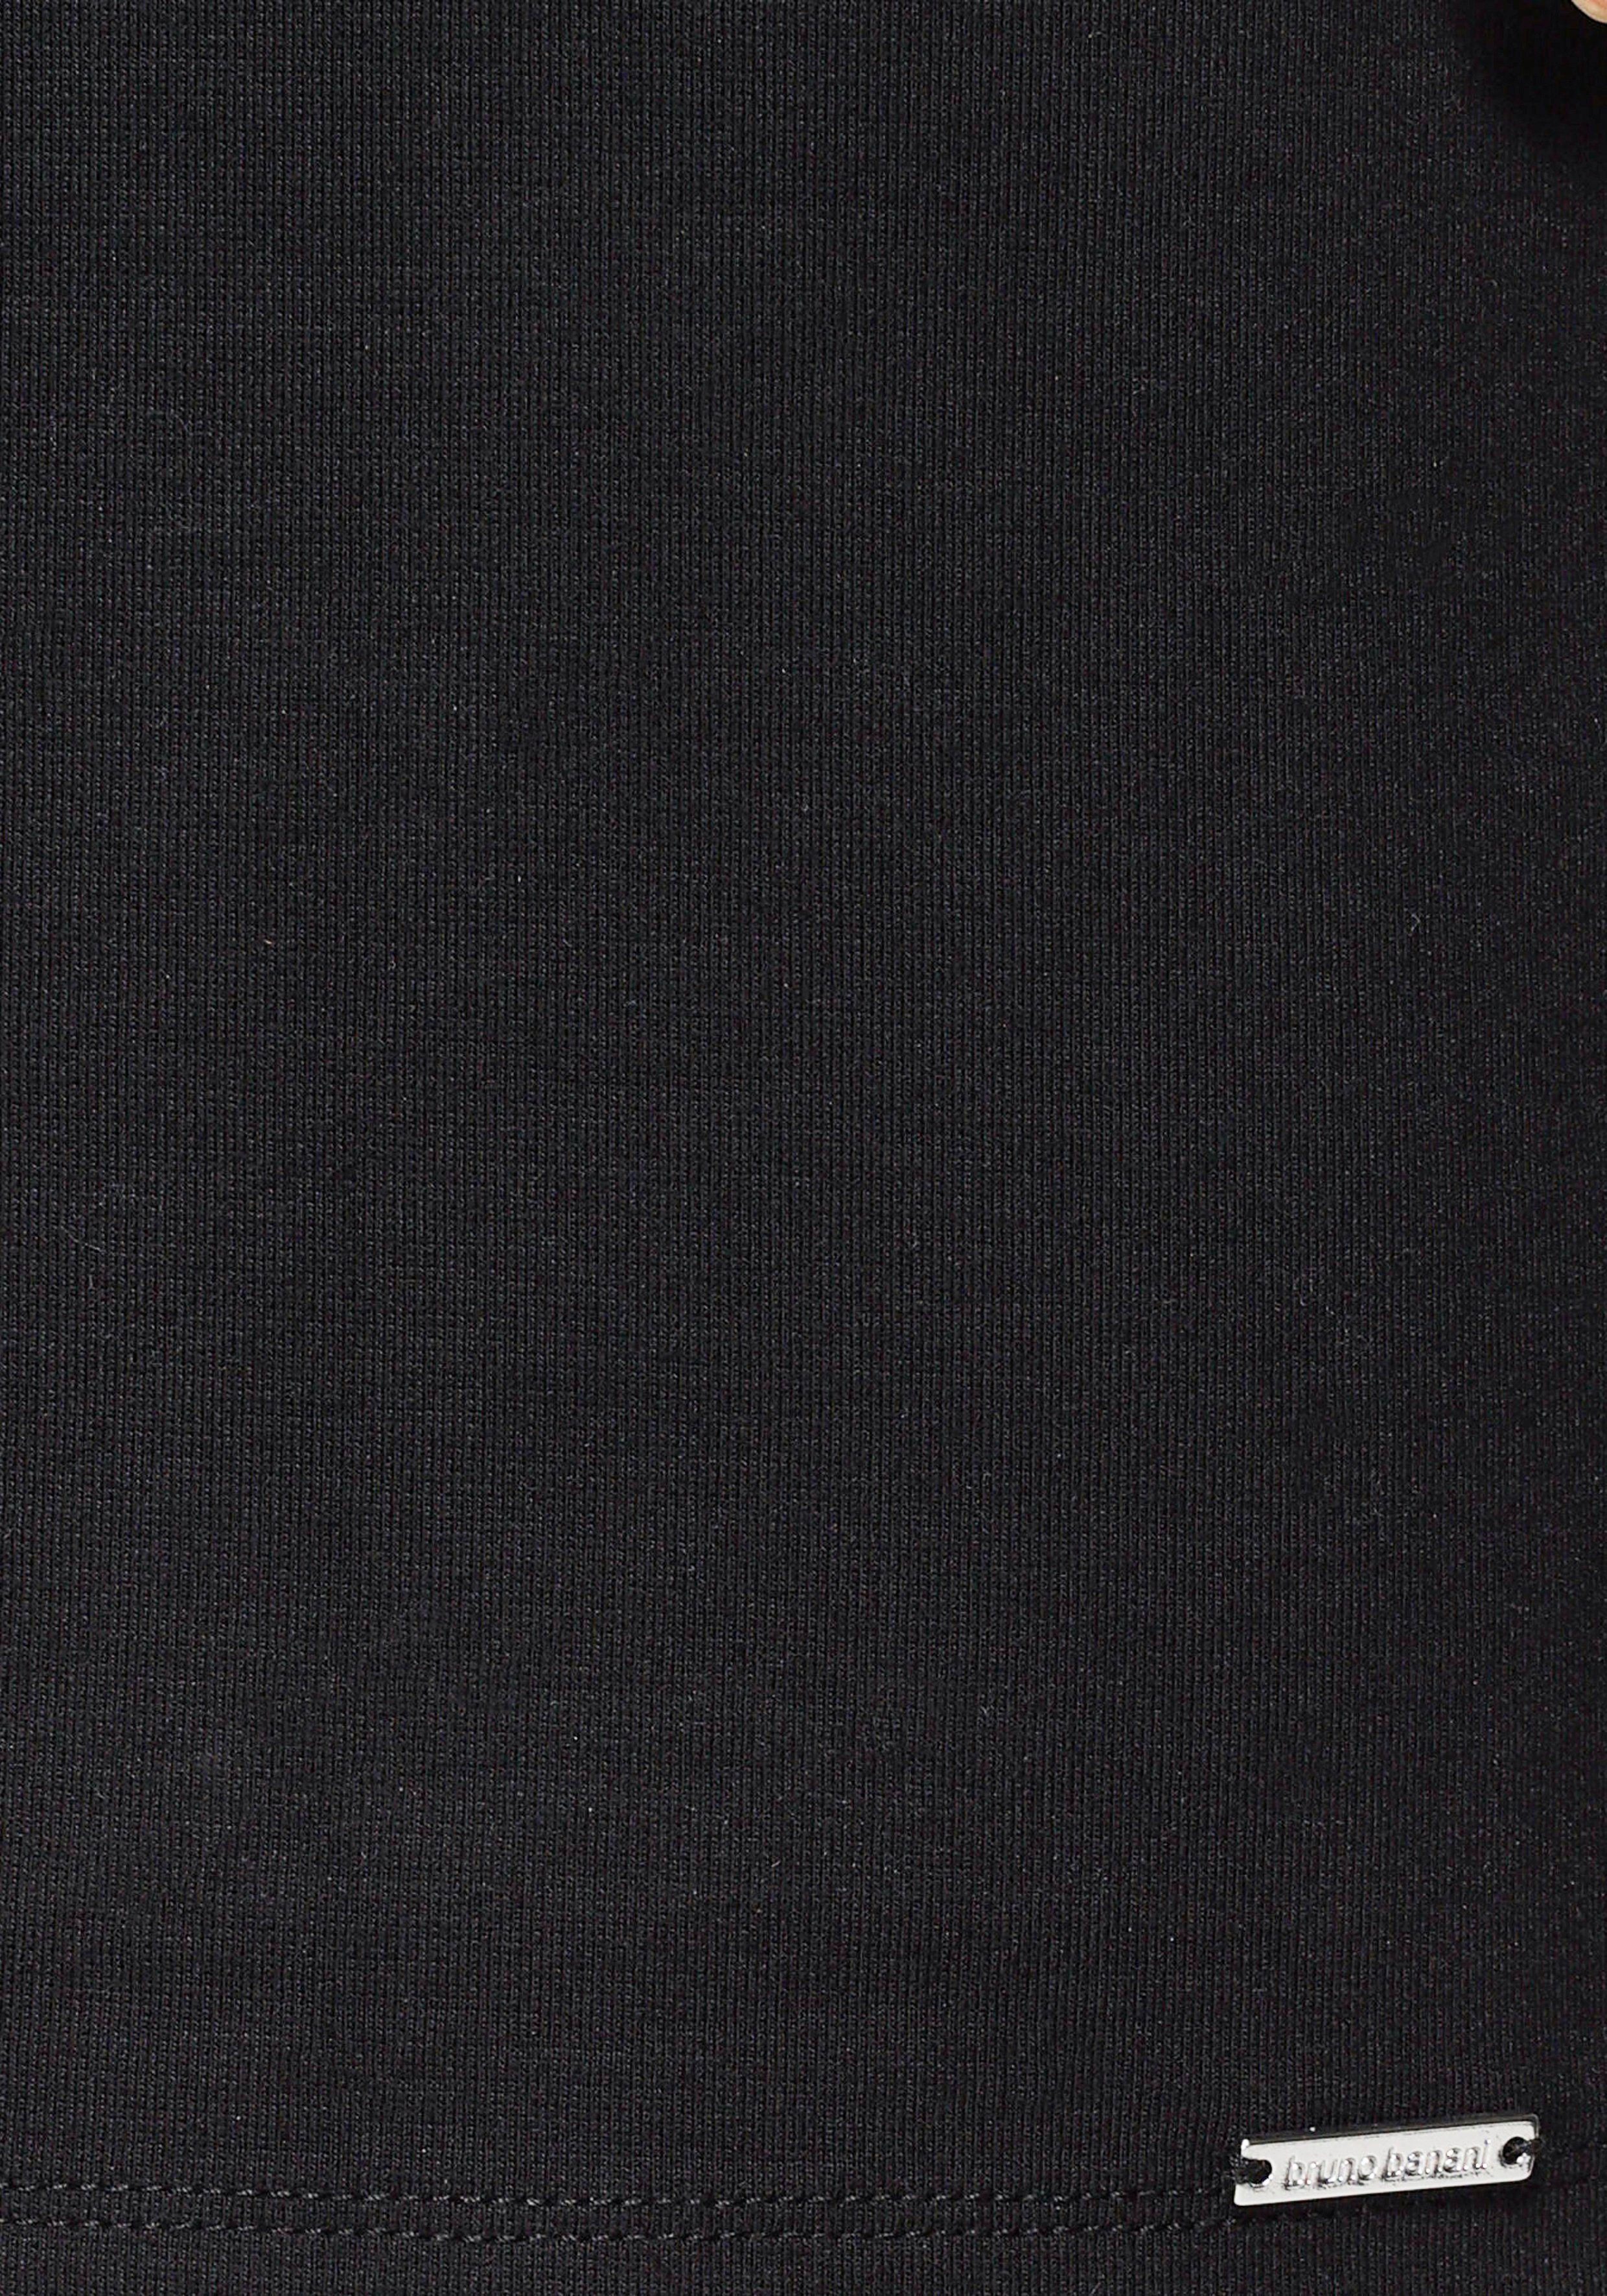 KOLLEKTION mit Jerseykleid nachhaltigem aus - Material) Jerseykleid schwarz Bruno Banani Gummizug NEUE (